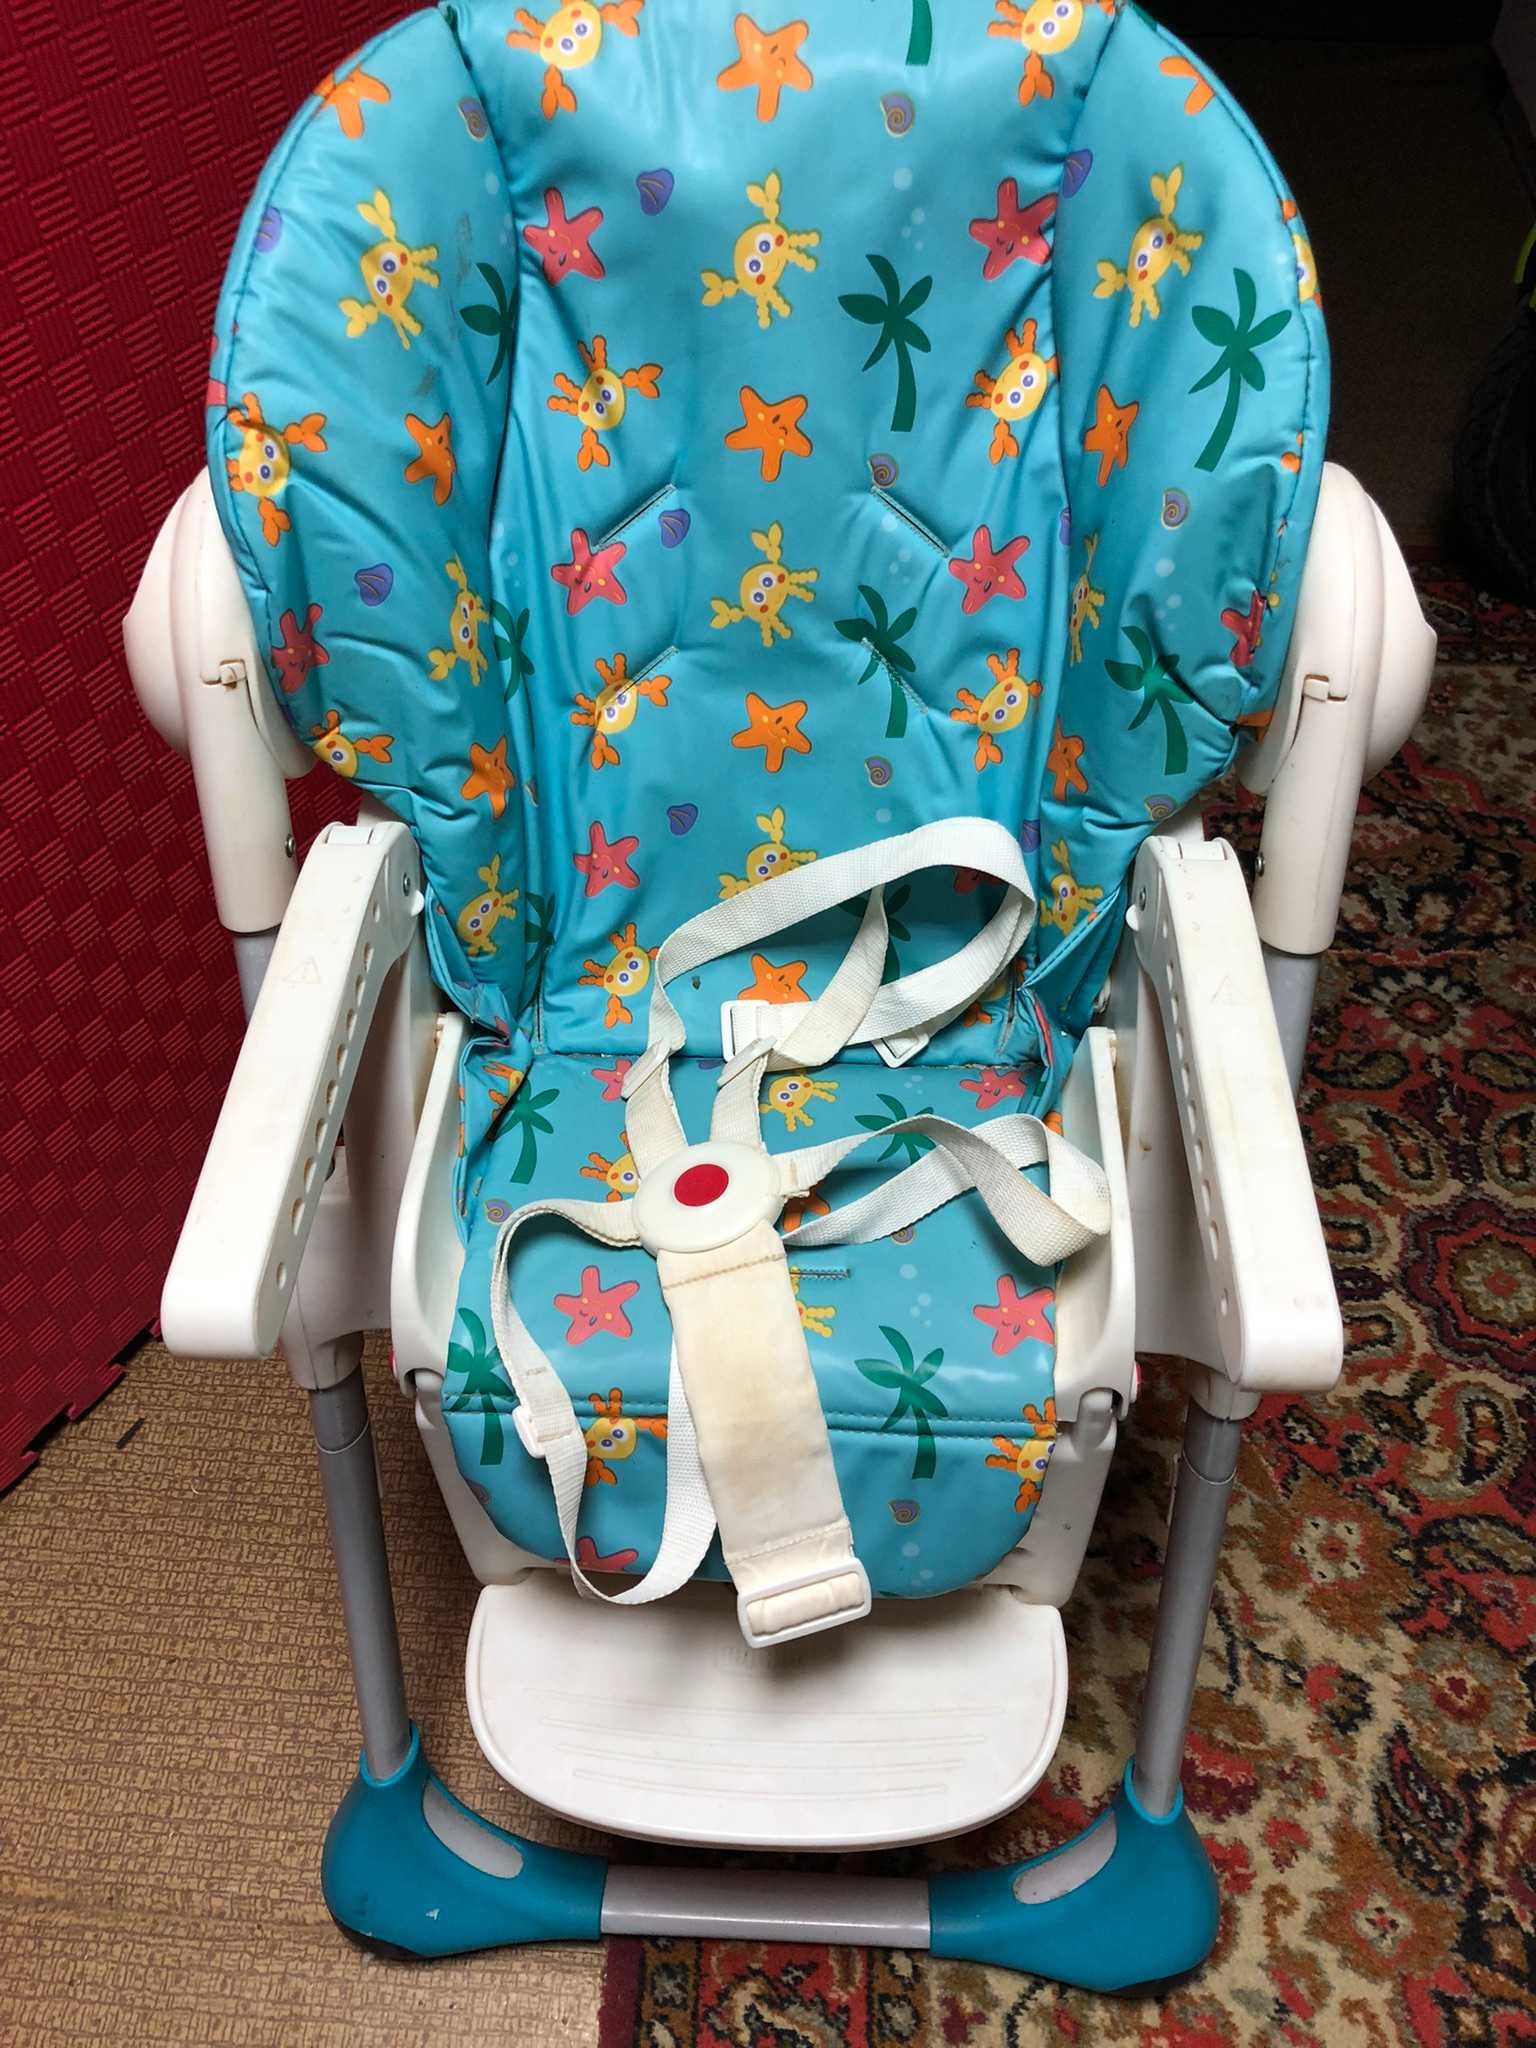 Детский стульчик для кормления Chicco Polly2